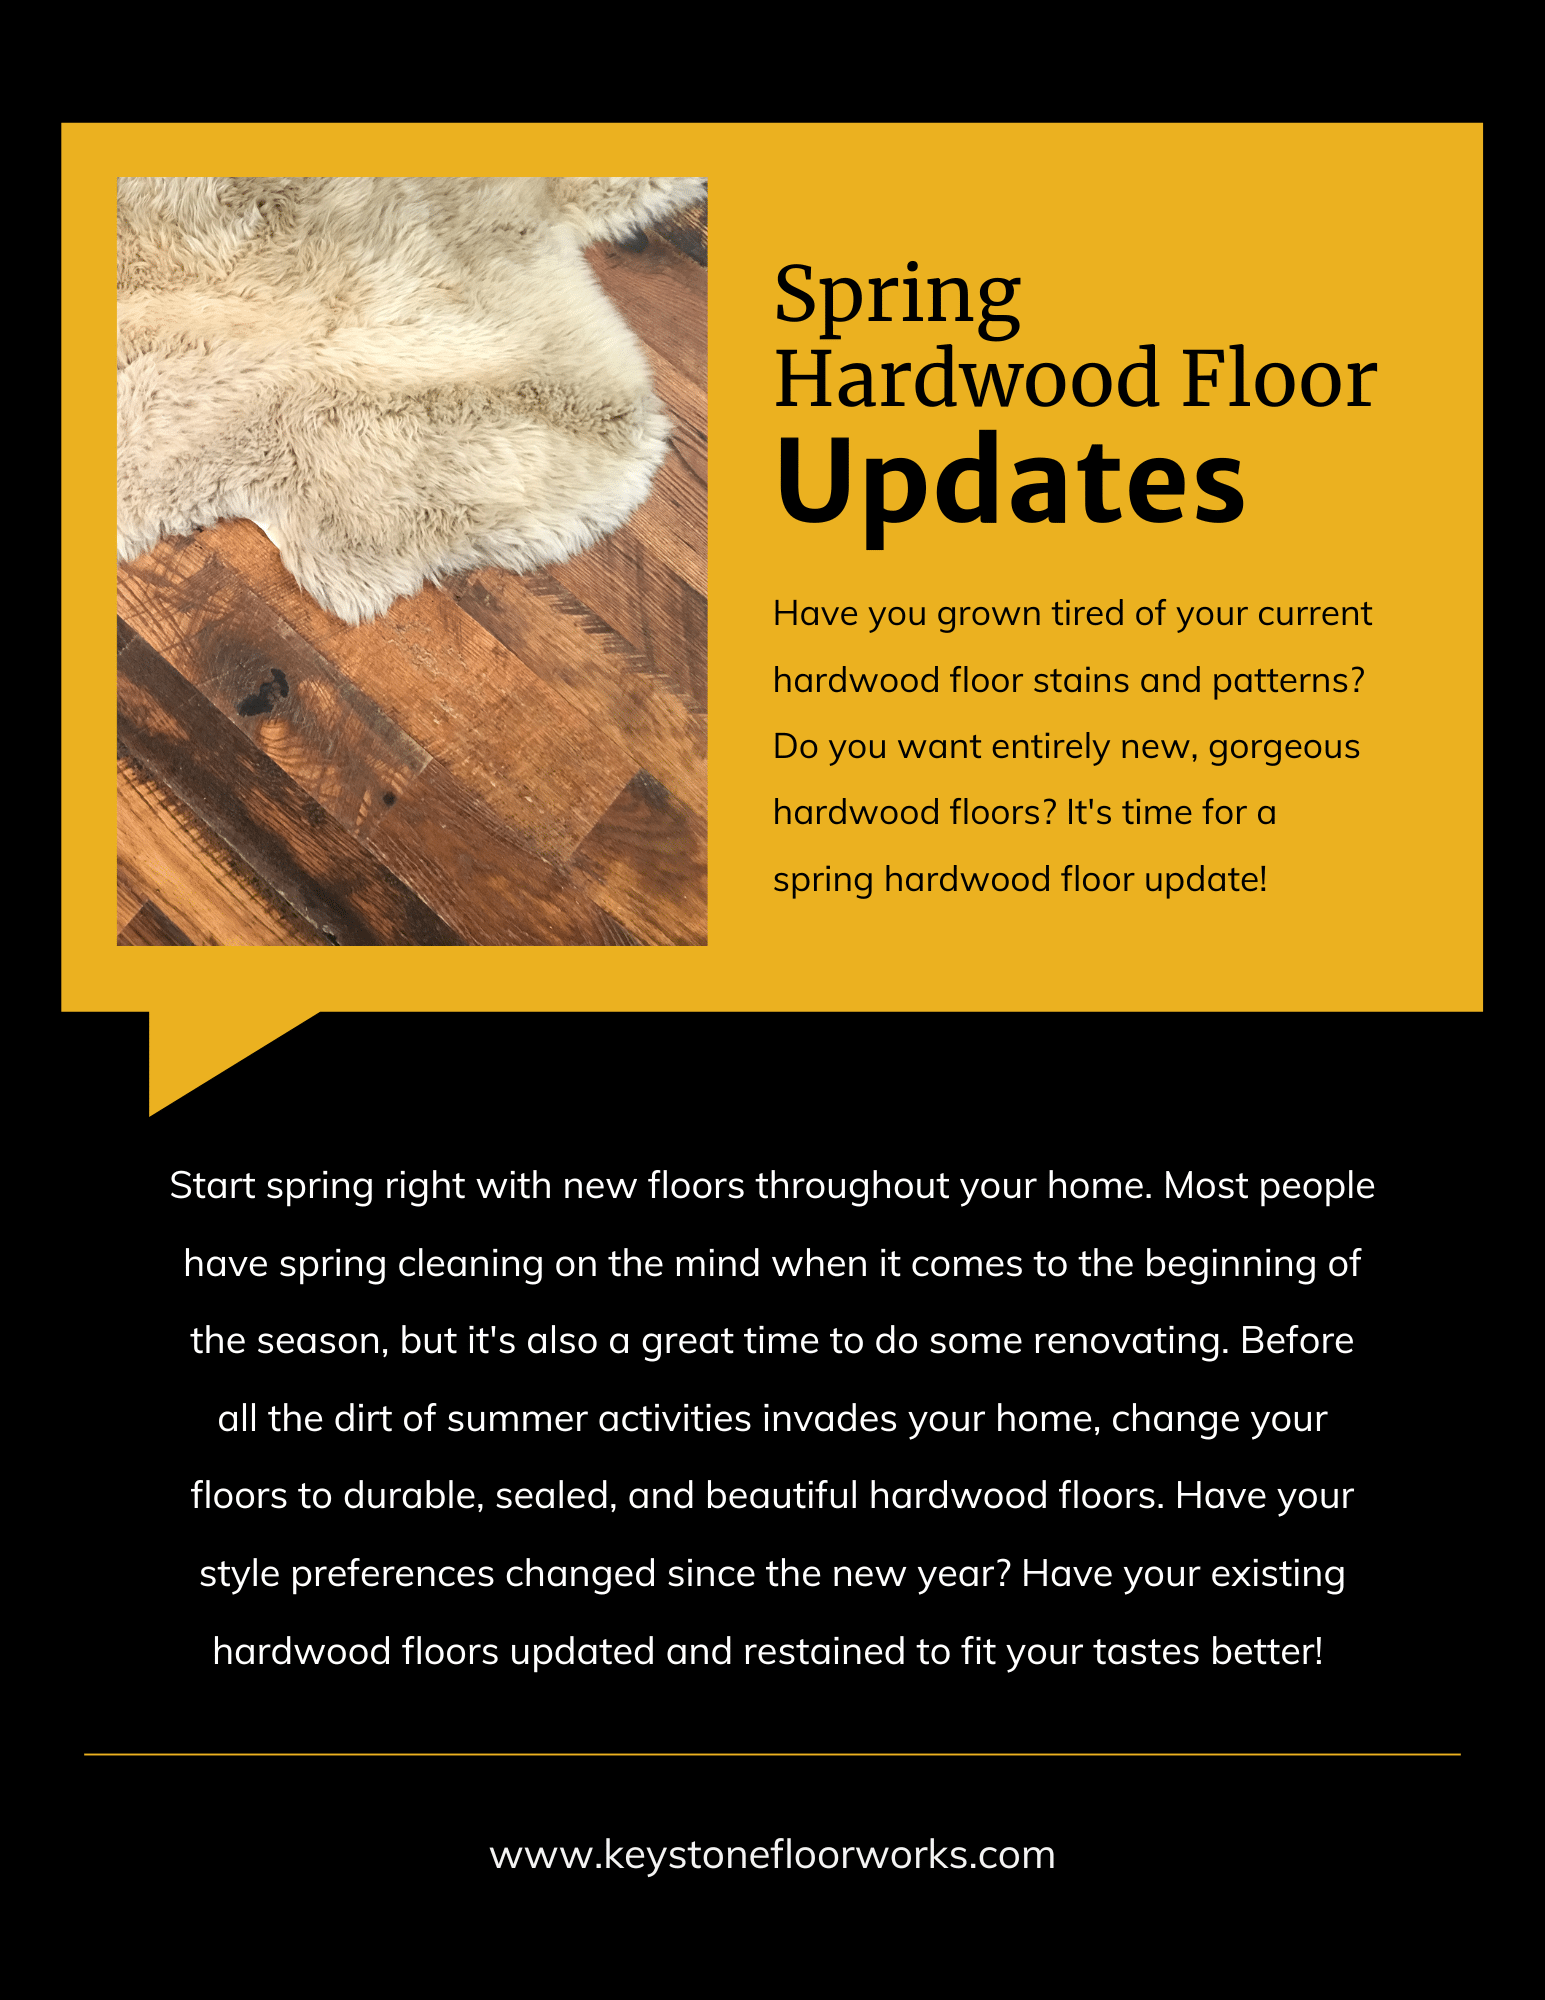 Spring Hardwood Floor Updates